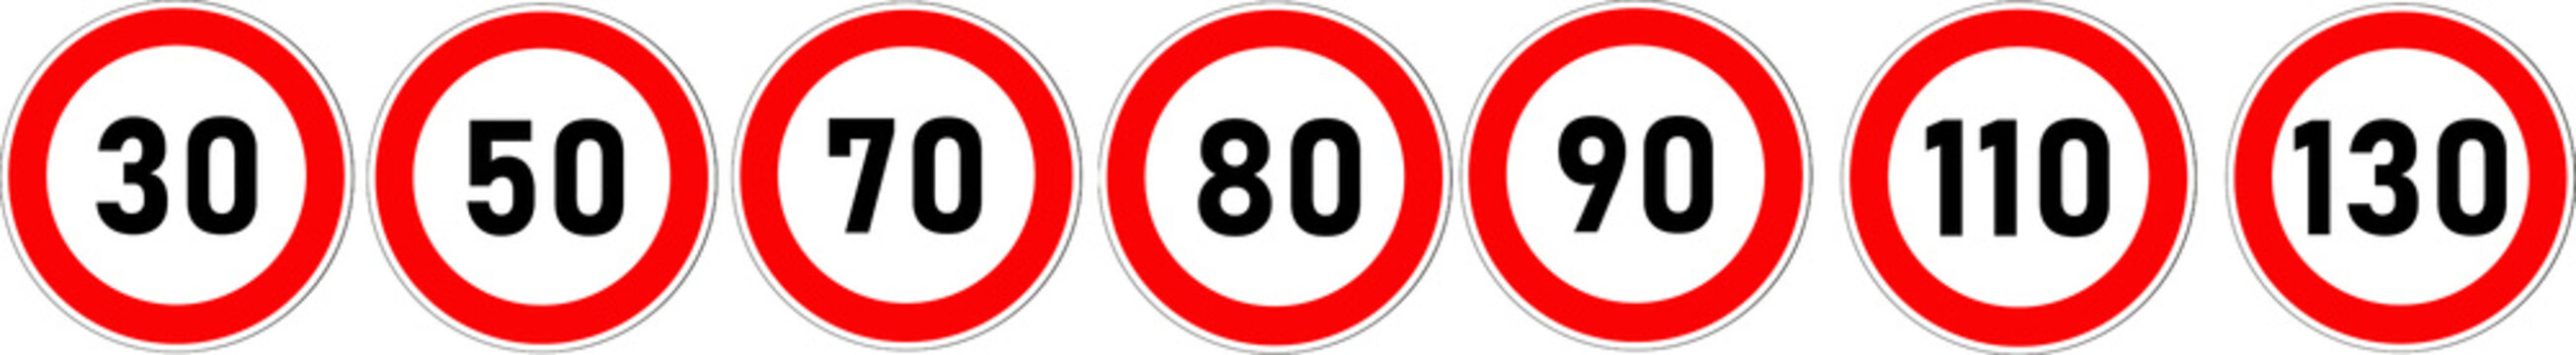 Groupe de panneaux routiers français: Limitation de vitesse	